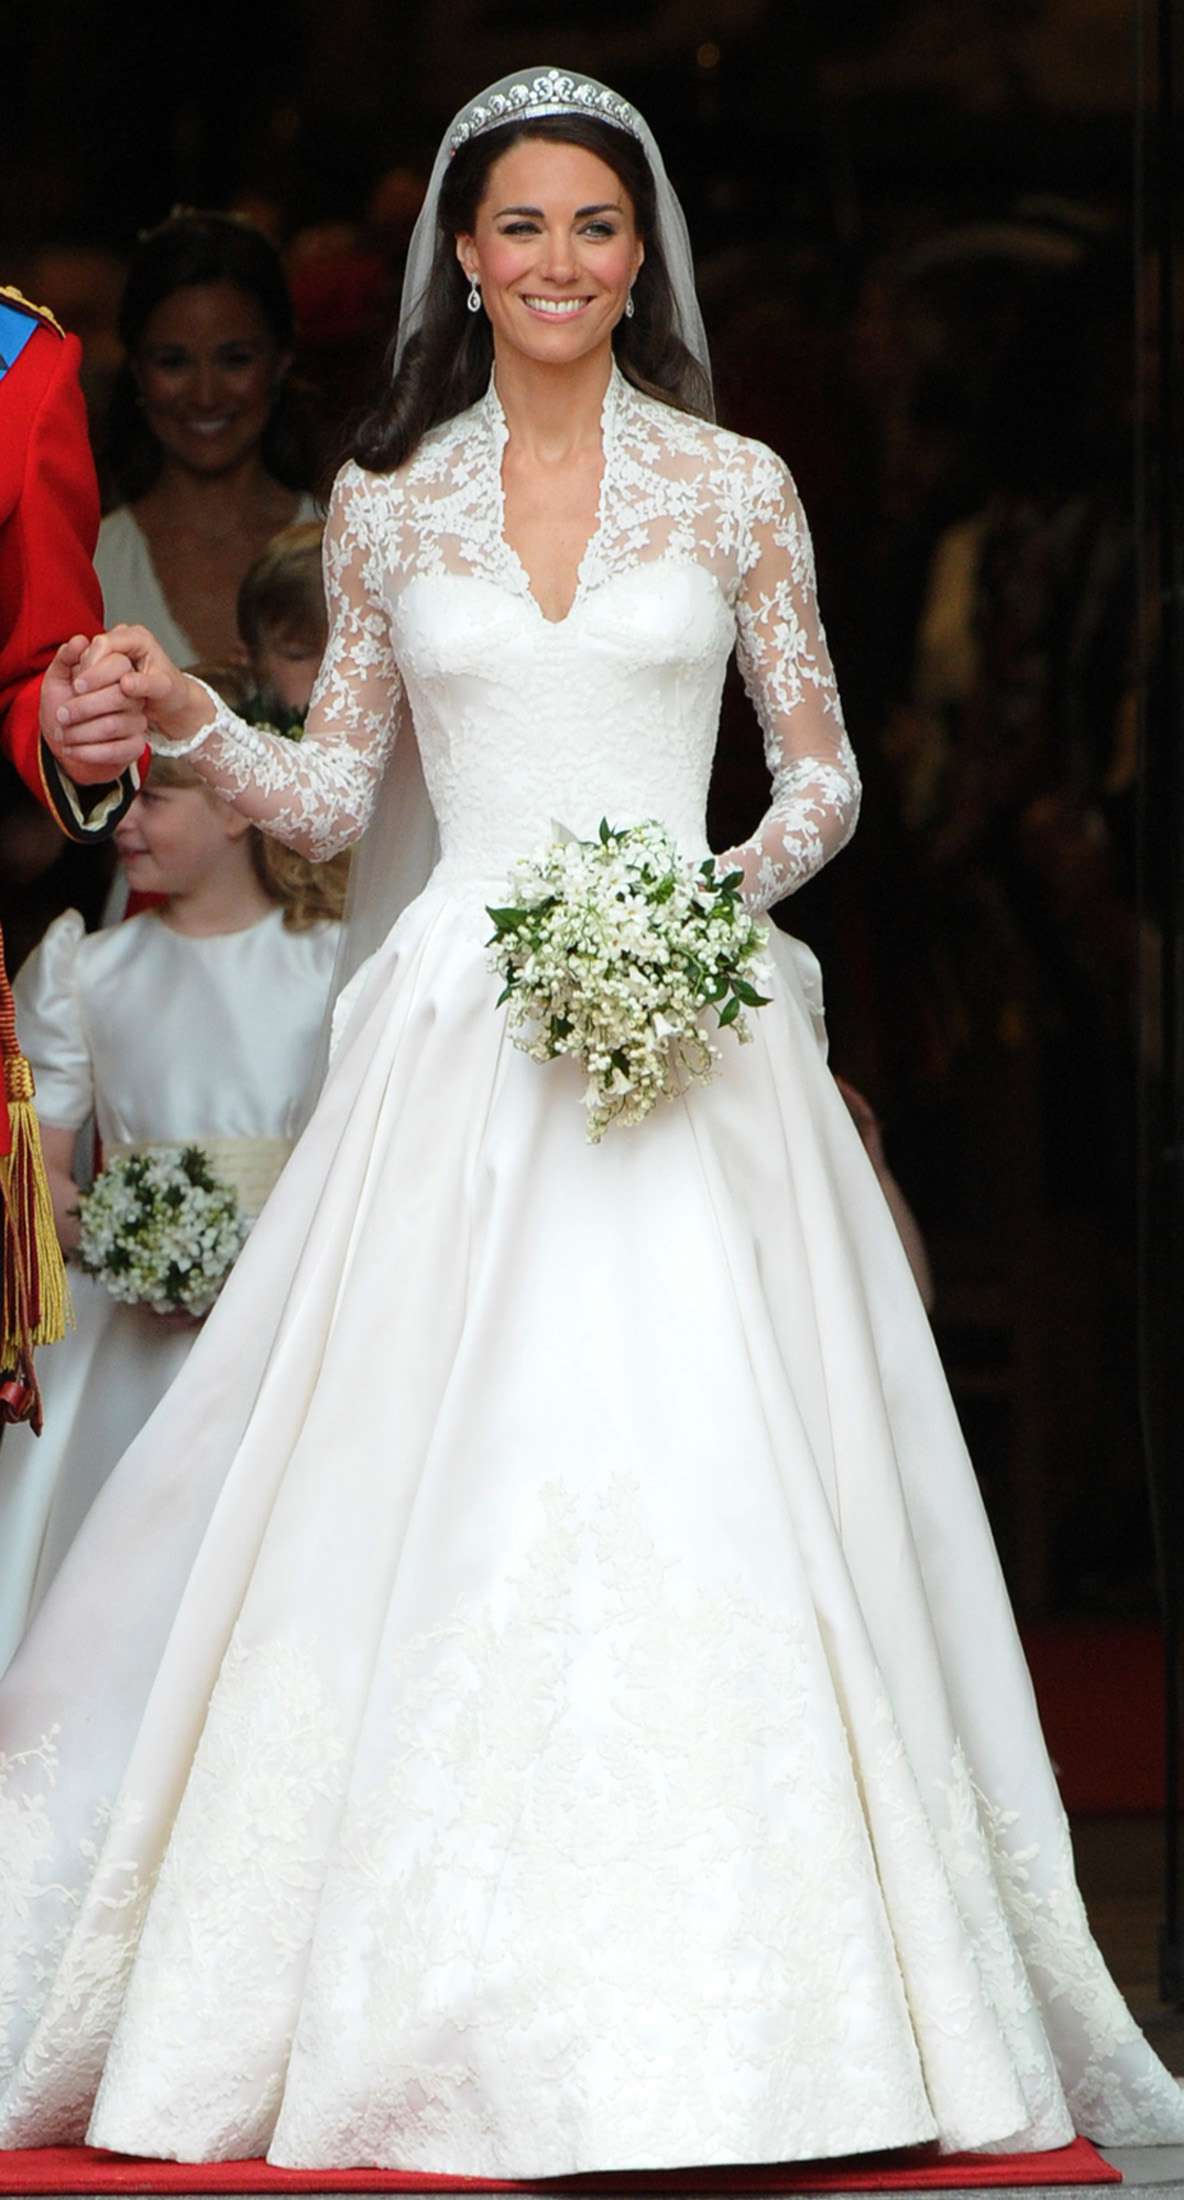 Aprendizaje Conquista tarifa Los vestidos de novia de la realeza británica | People en Español